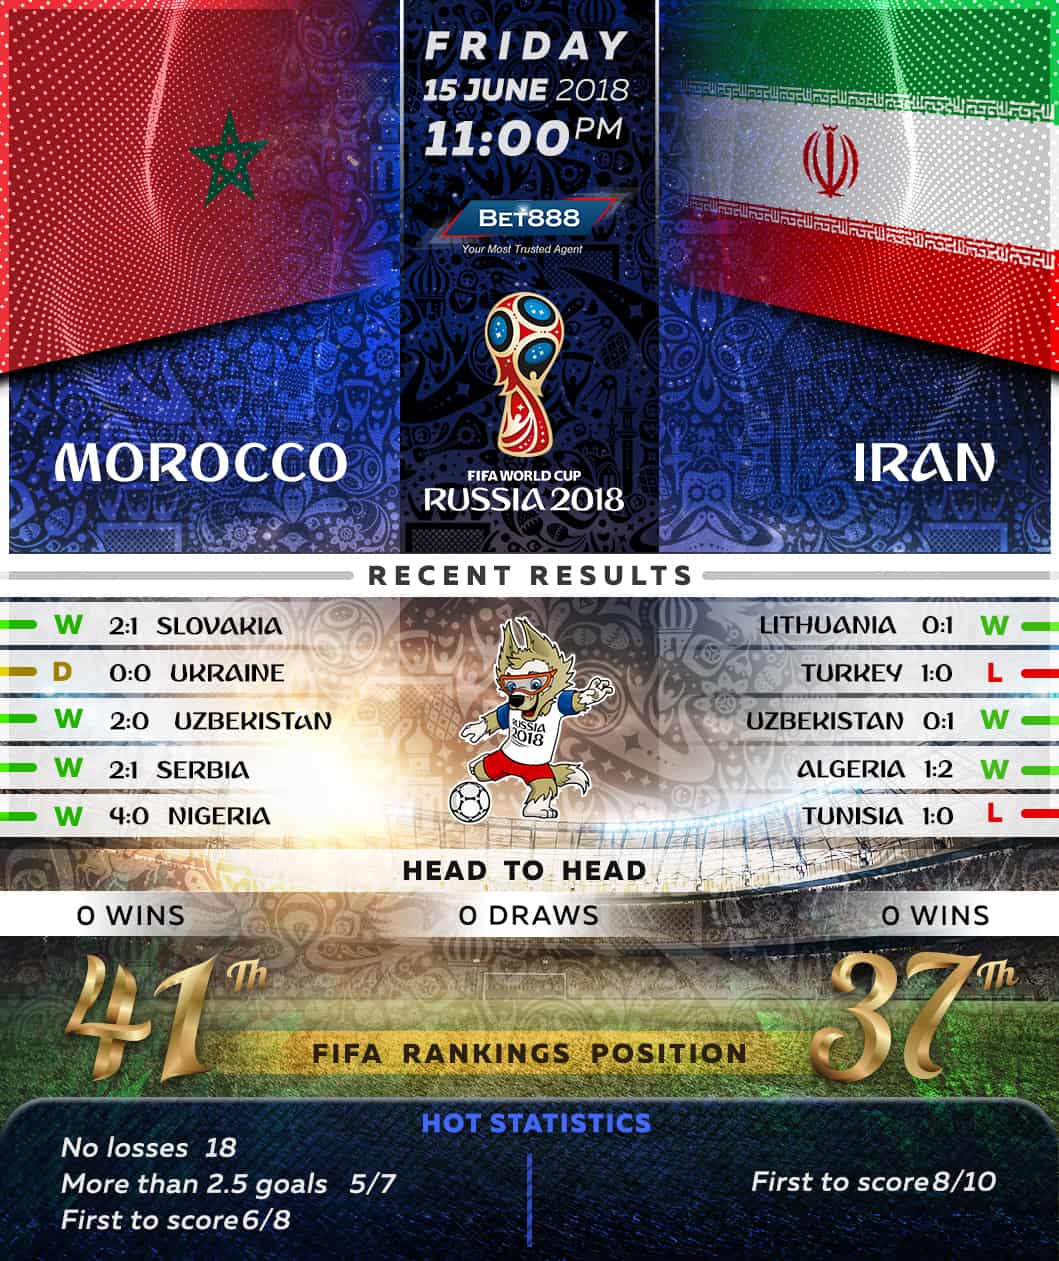 Morocco vs Iran 15/06/18